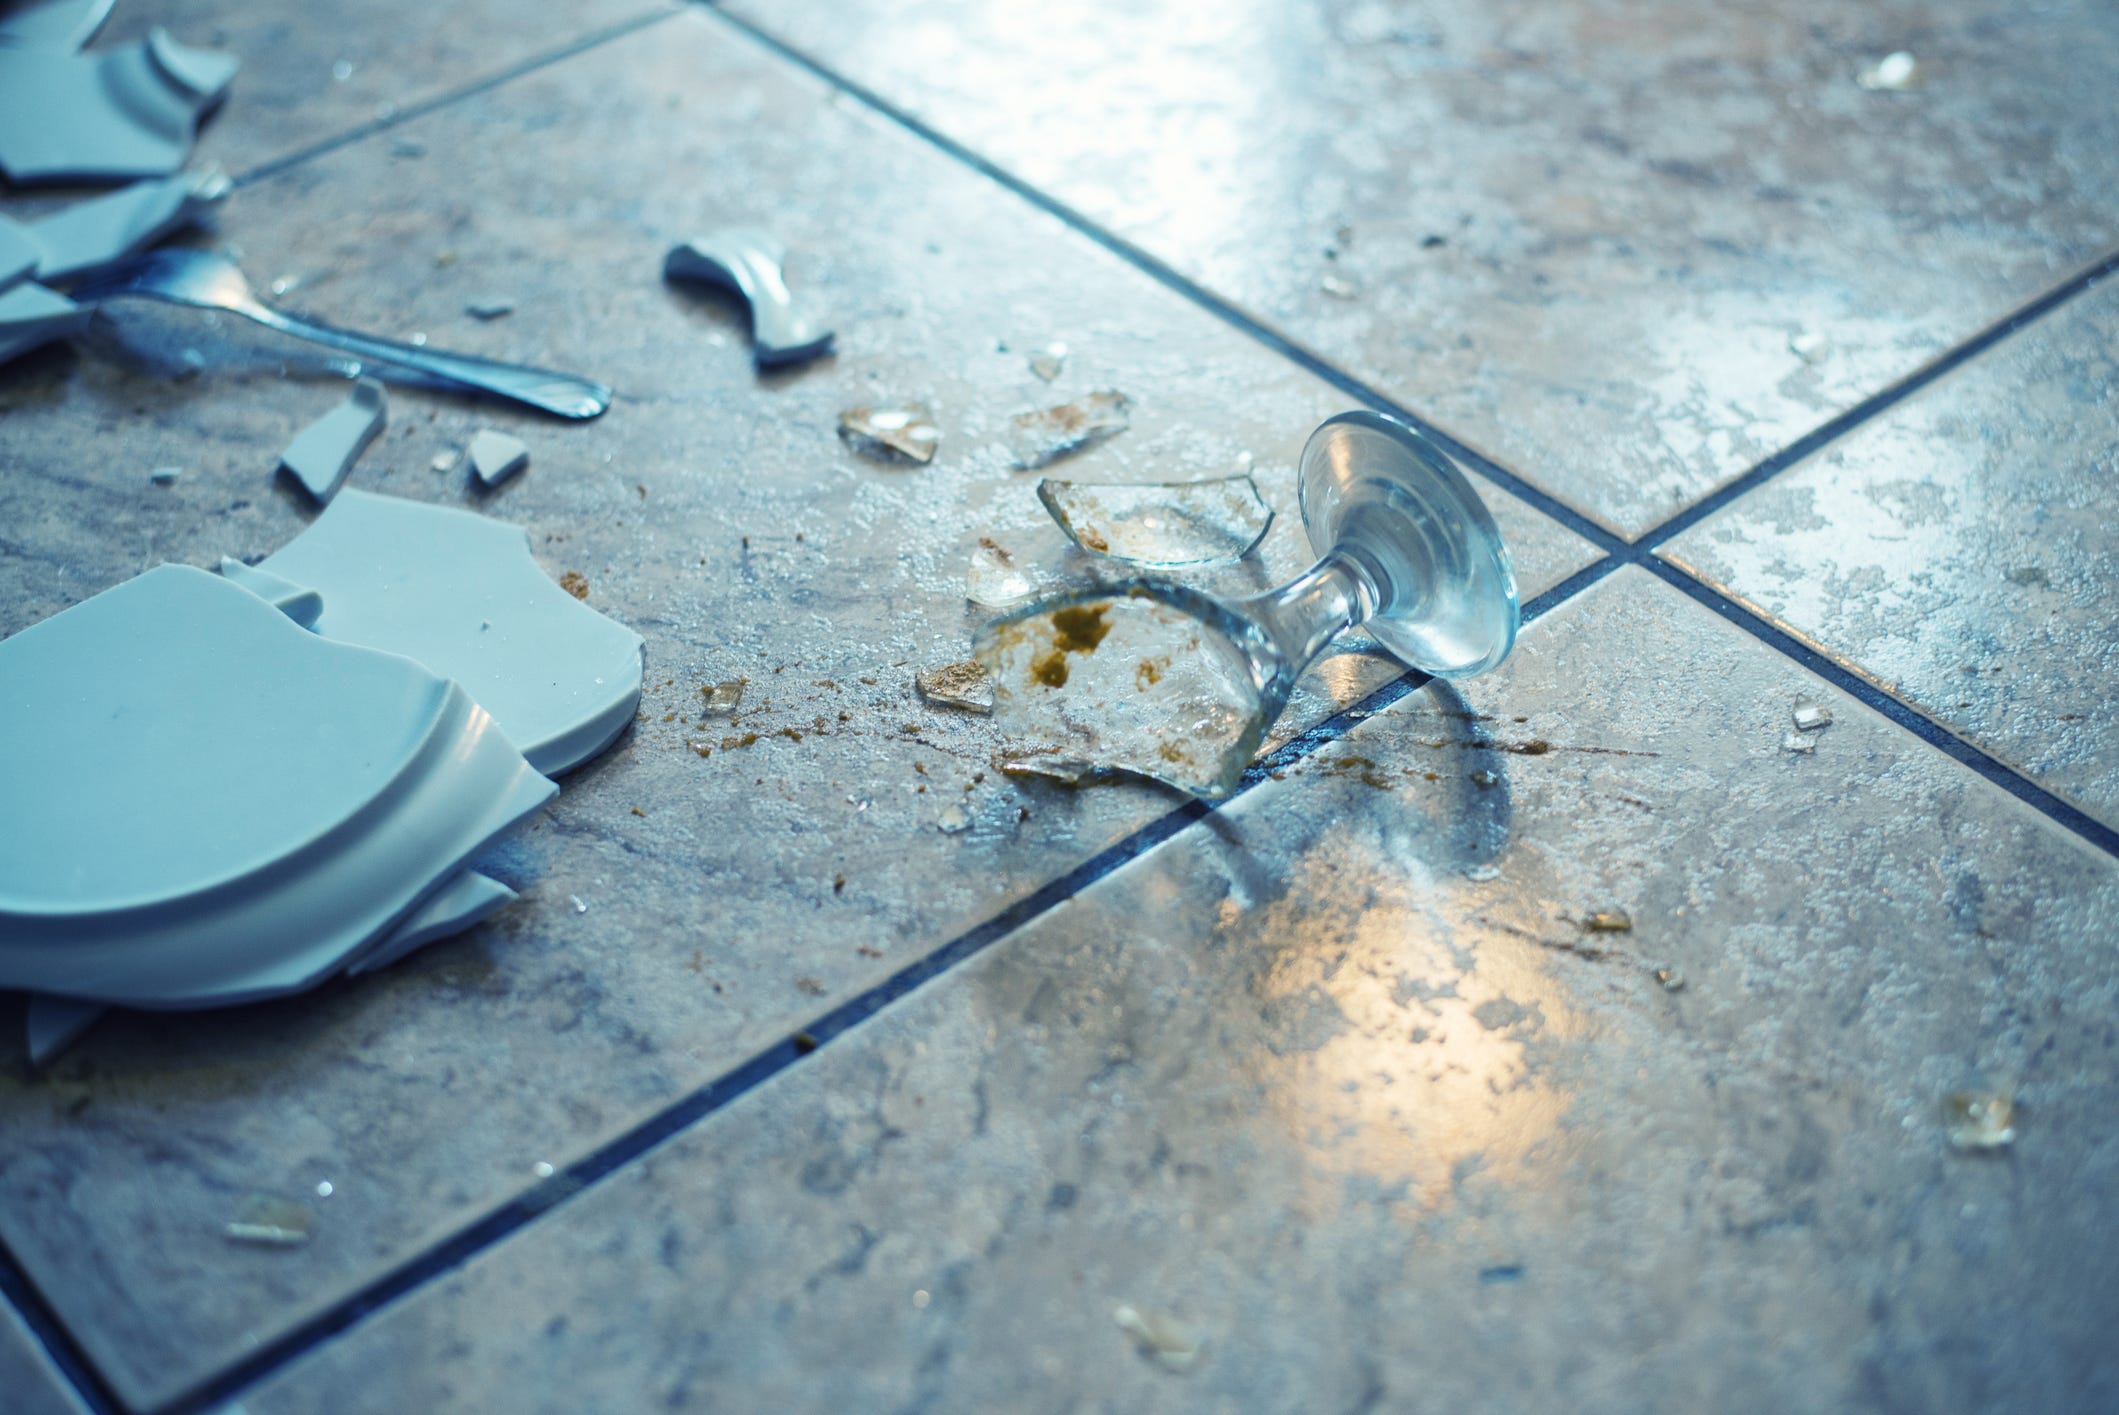 Broken on the floor. Разбитая посуда. Разбитая посуда на полу. Разбитая тарелка. Разбитая ваза.